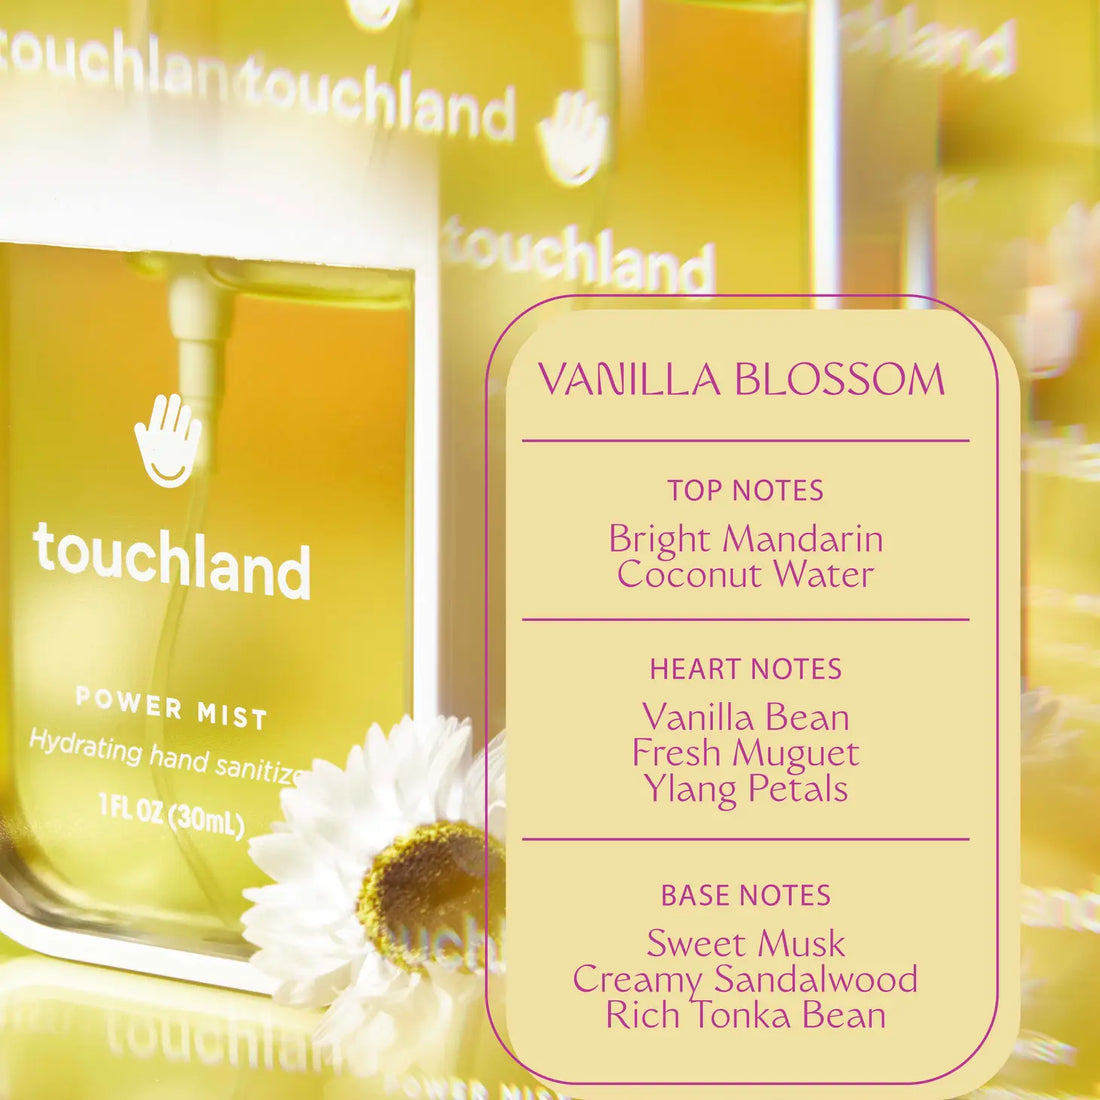 Touchland Power Mist Hand Sanitizer - Vanilla Blossom